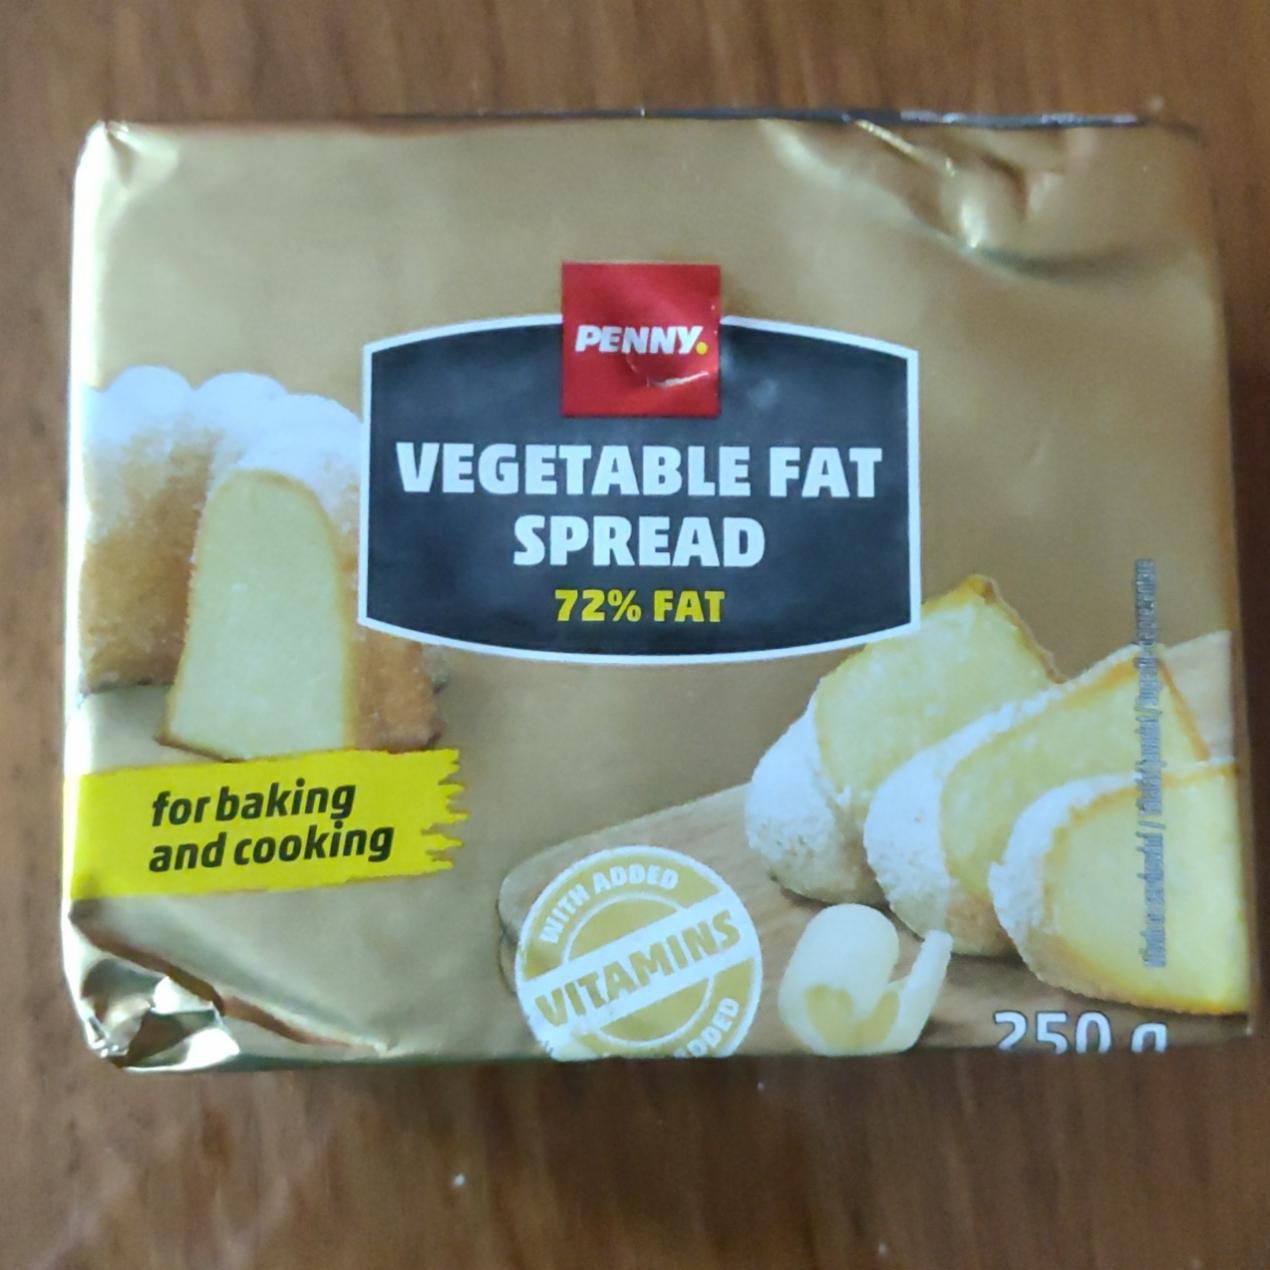 Fotografie - Vegetable fat spread 72% fat Penny